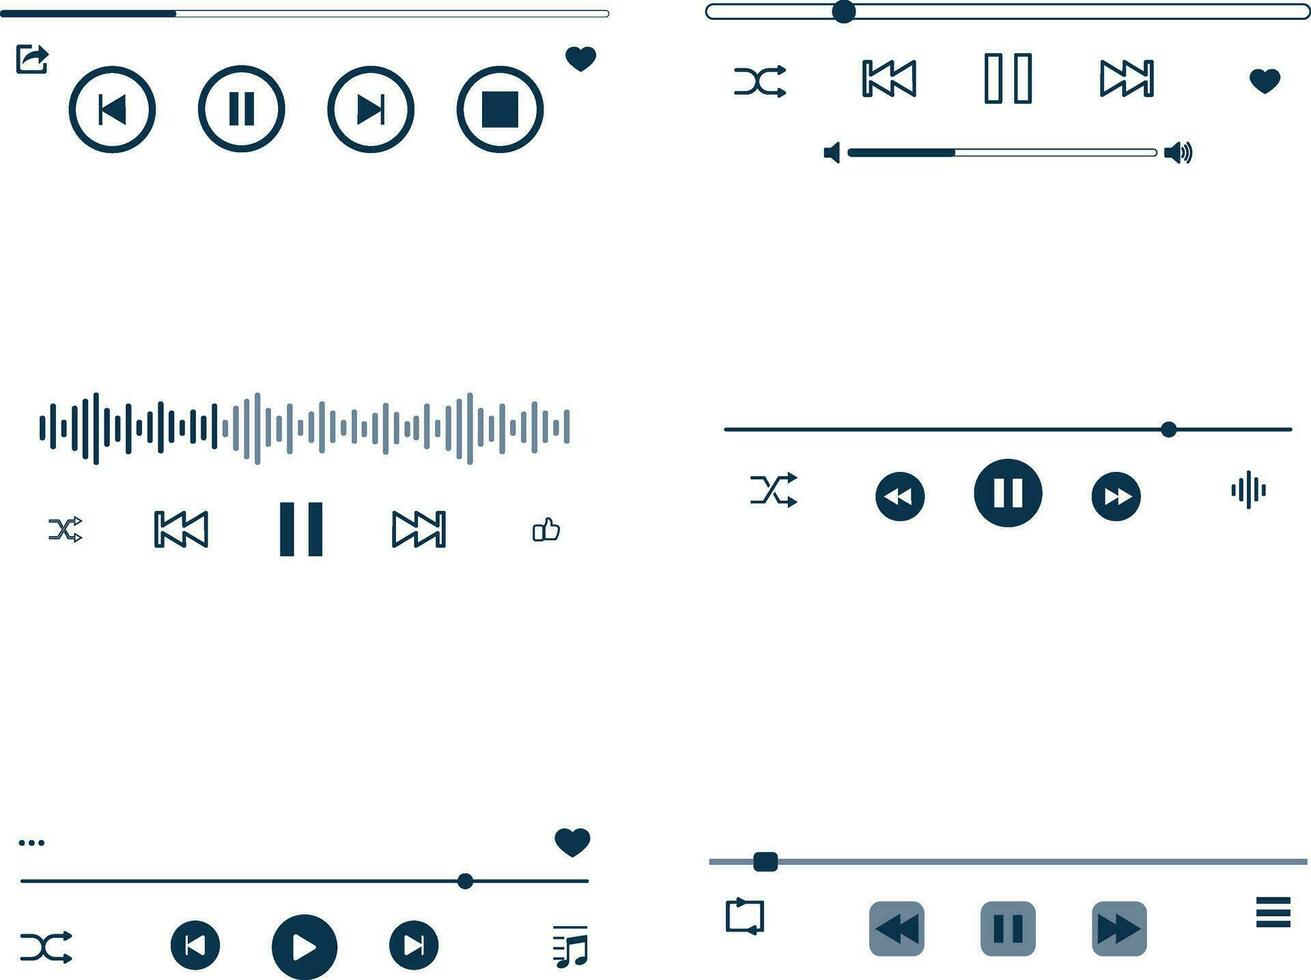 muziek- speler bedekking ontwerp met knop en spoor, vector illustratie